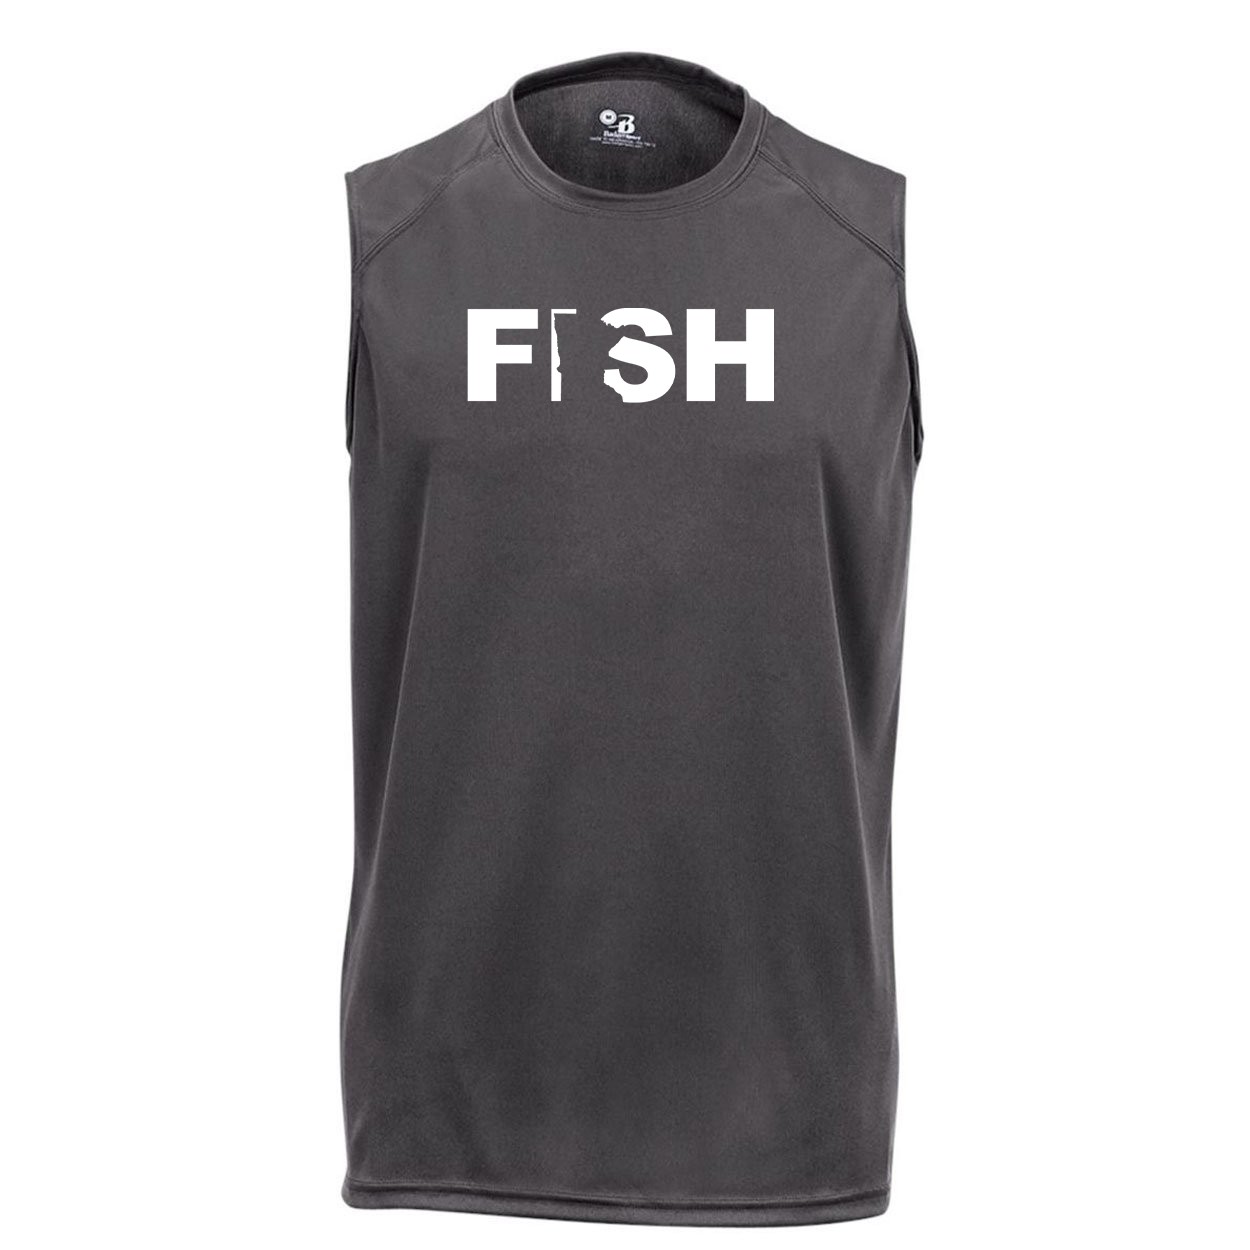 Fish Minnesota Classic Unisex Performance Sleeveless T-Shirt Graphite Gray (White Logo)